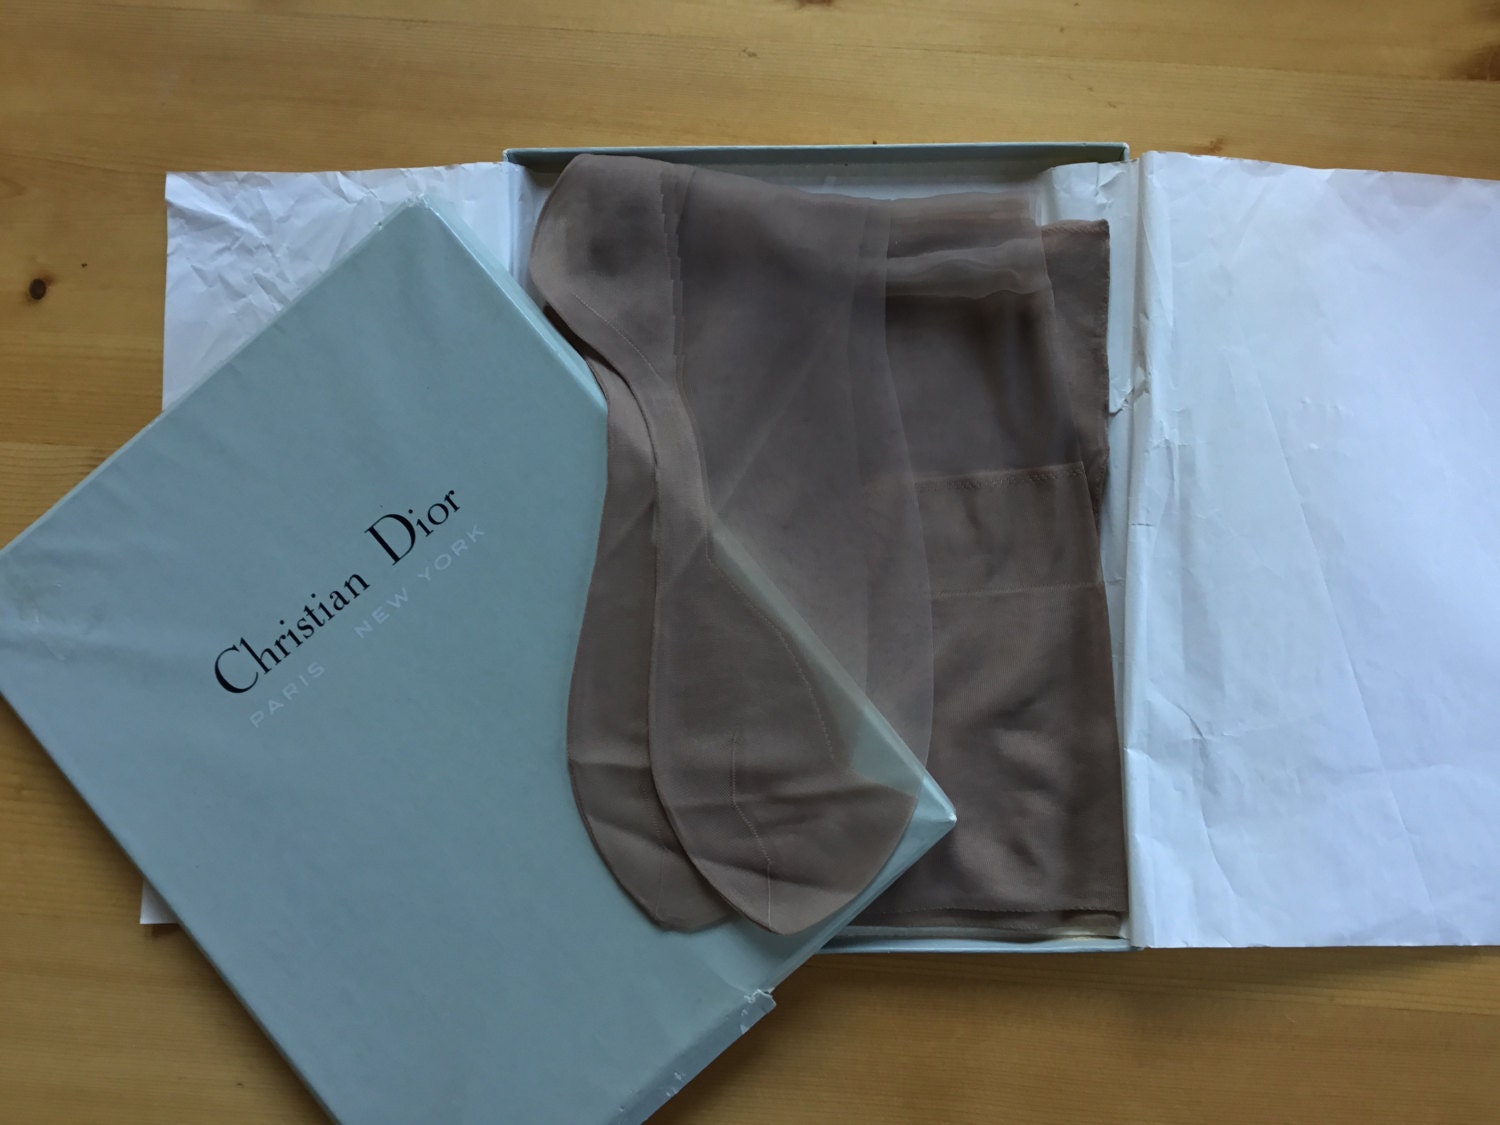 Genuine 60s Dior Stockings 2 Pairs in Original Box Seam Cuban Heel 15  Denier Miss Dior Vermeil Size 9.5 Vintage Hosiery Stunning Unworn